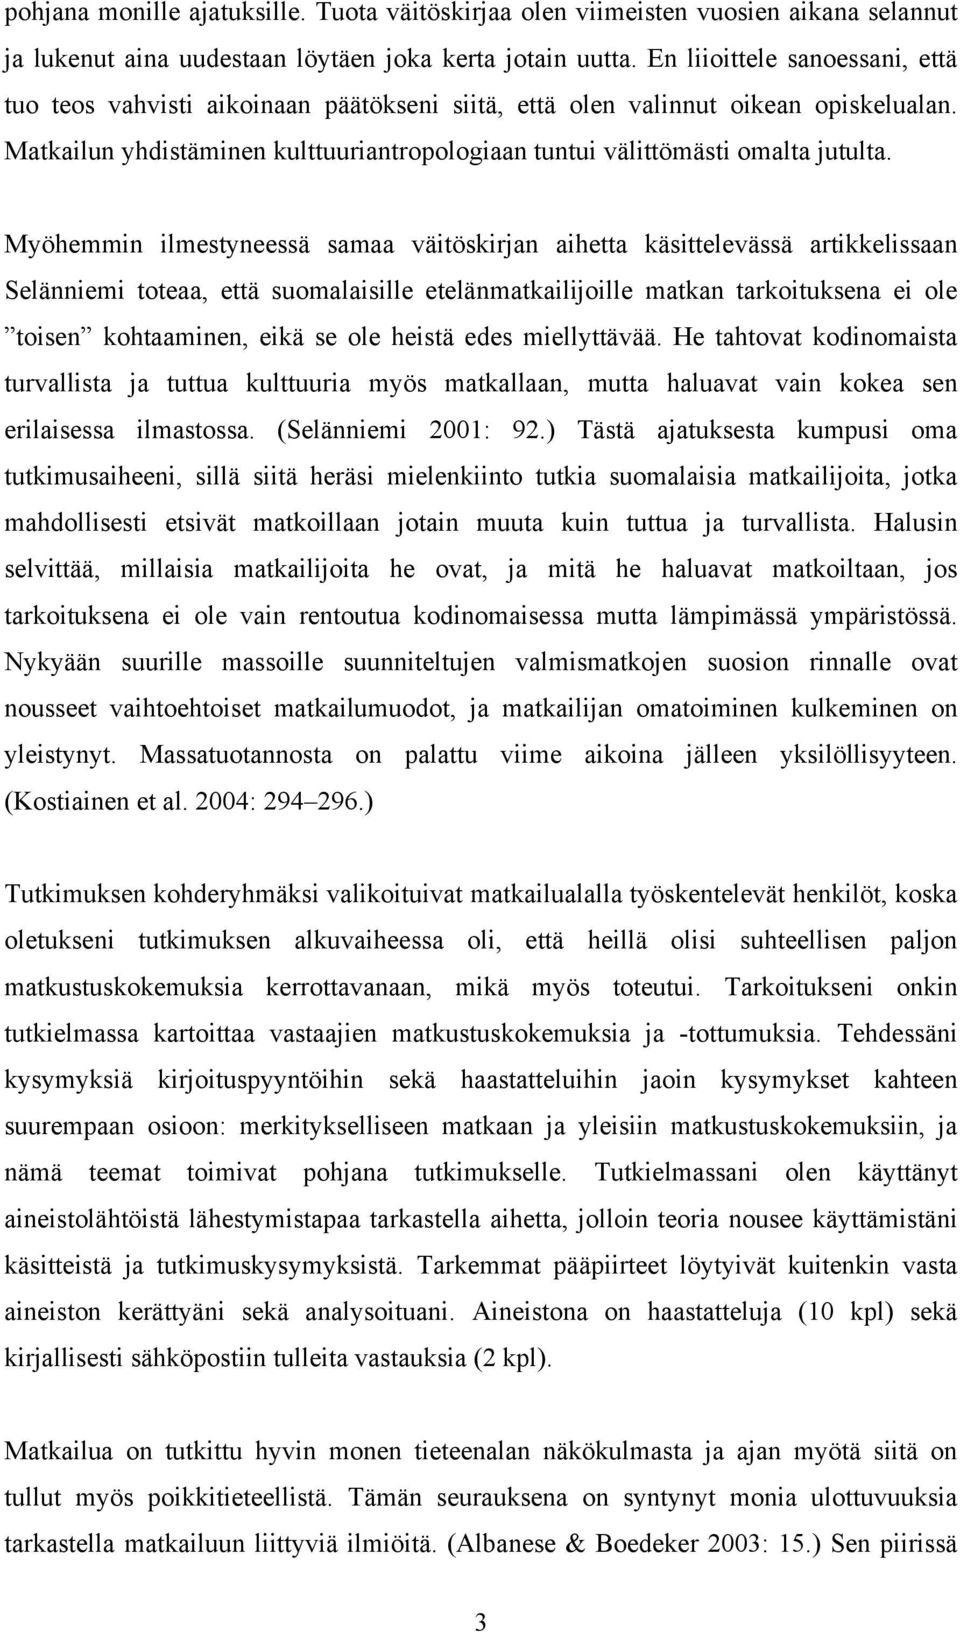 Myöhemmin ilmestyneessä samaa väitöskirjan aihetta käsittelevässä artikkelissaan Selänniemi toteaa, että suomalaisille etelänmatkailijoille matkan tarkoituksena ei ole toisen kohtaaminen, eikä se ole